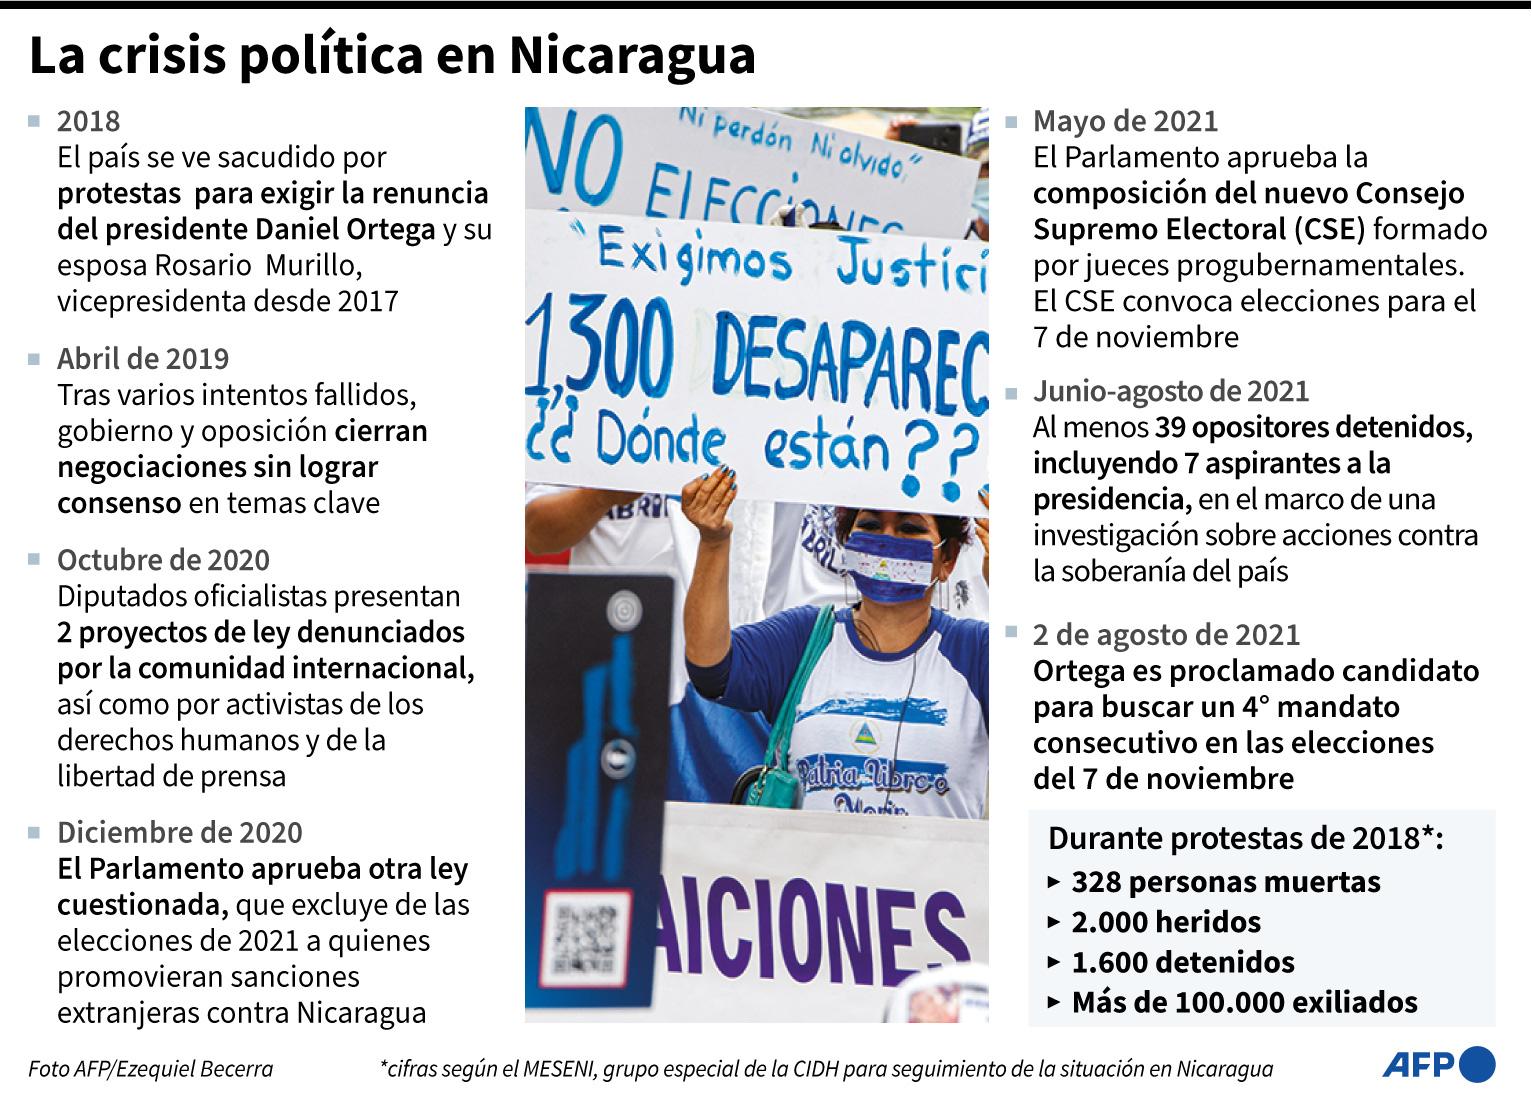 Cronología de la crisis política en Nicaragua desde 2018 - AFP / AFP